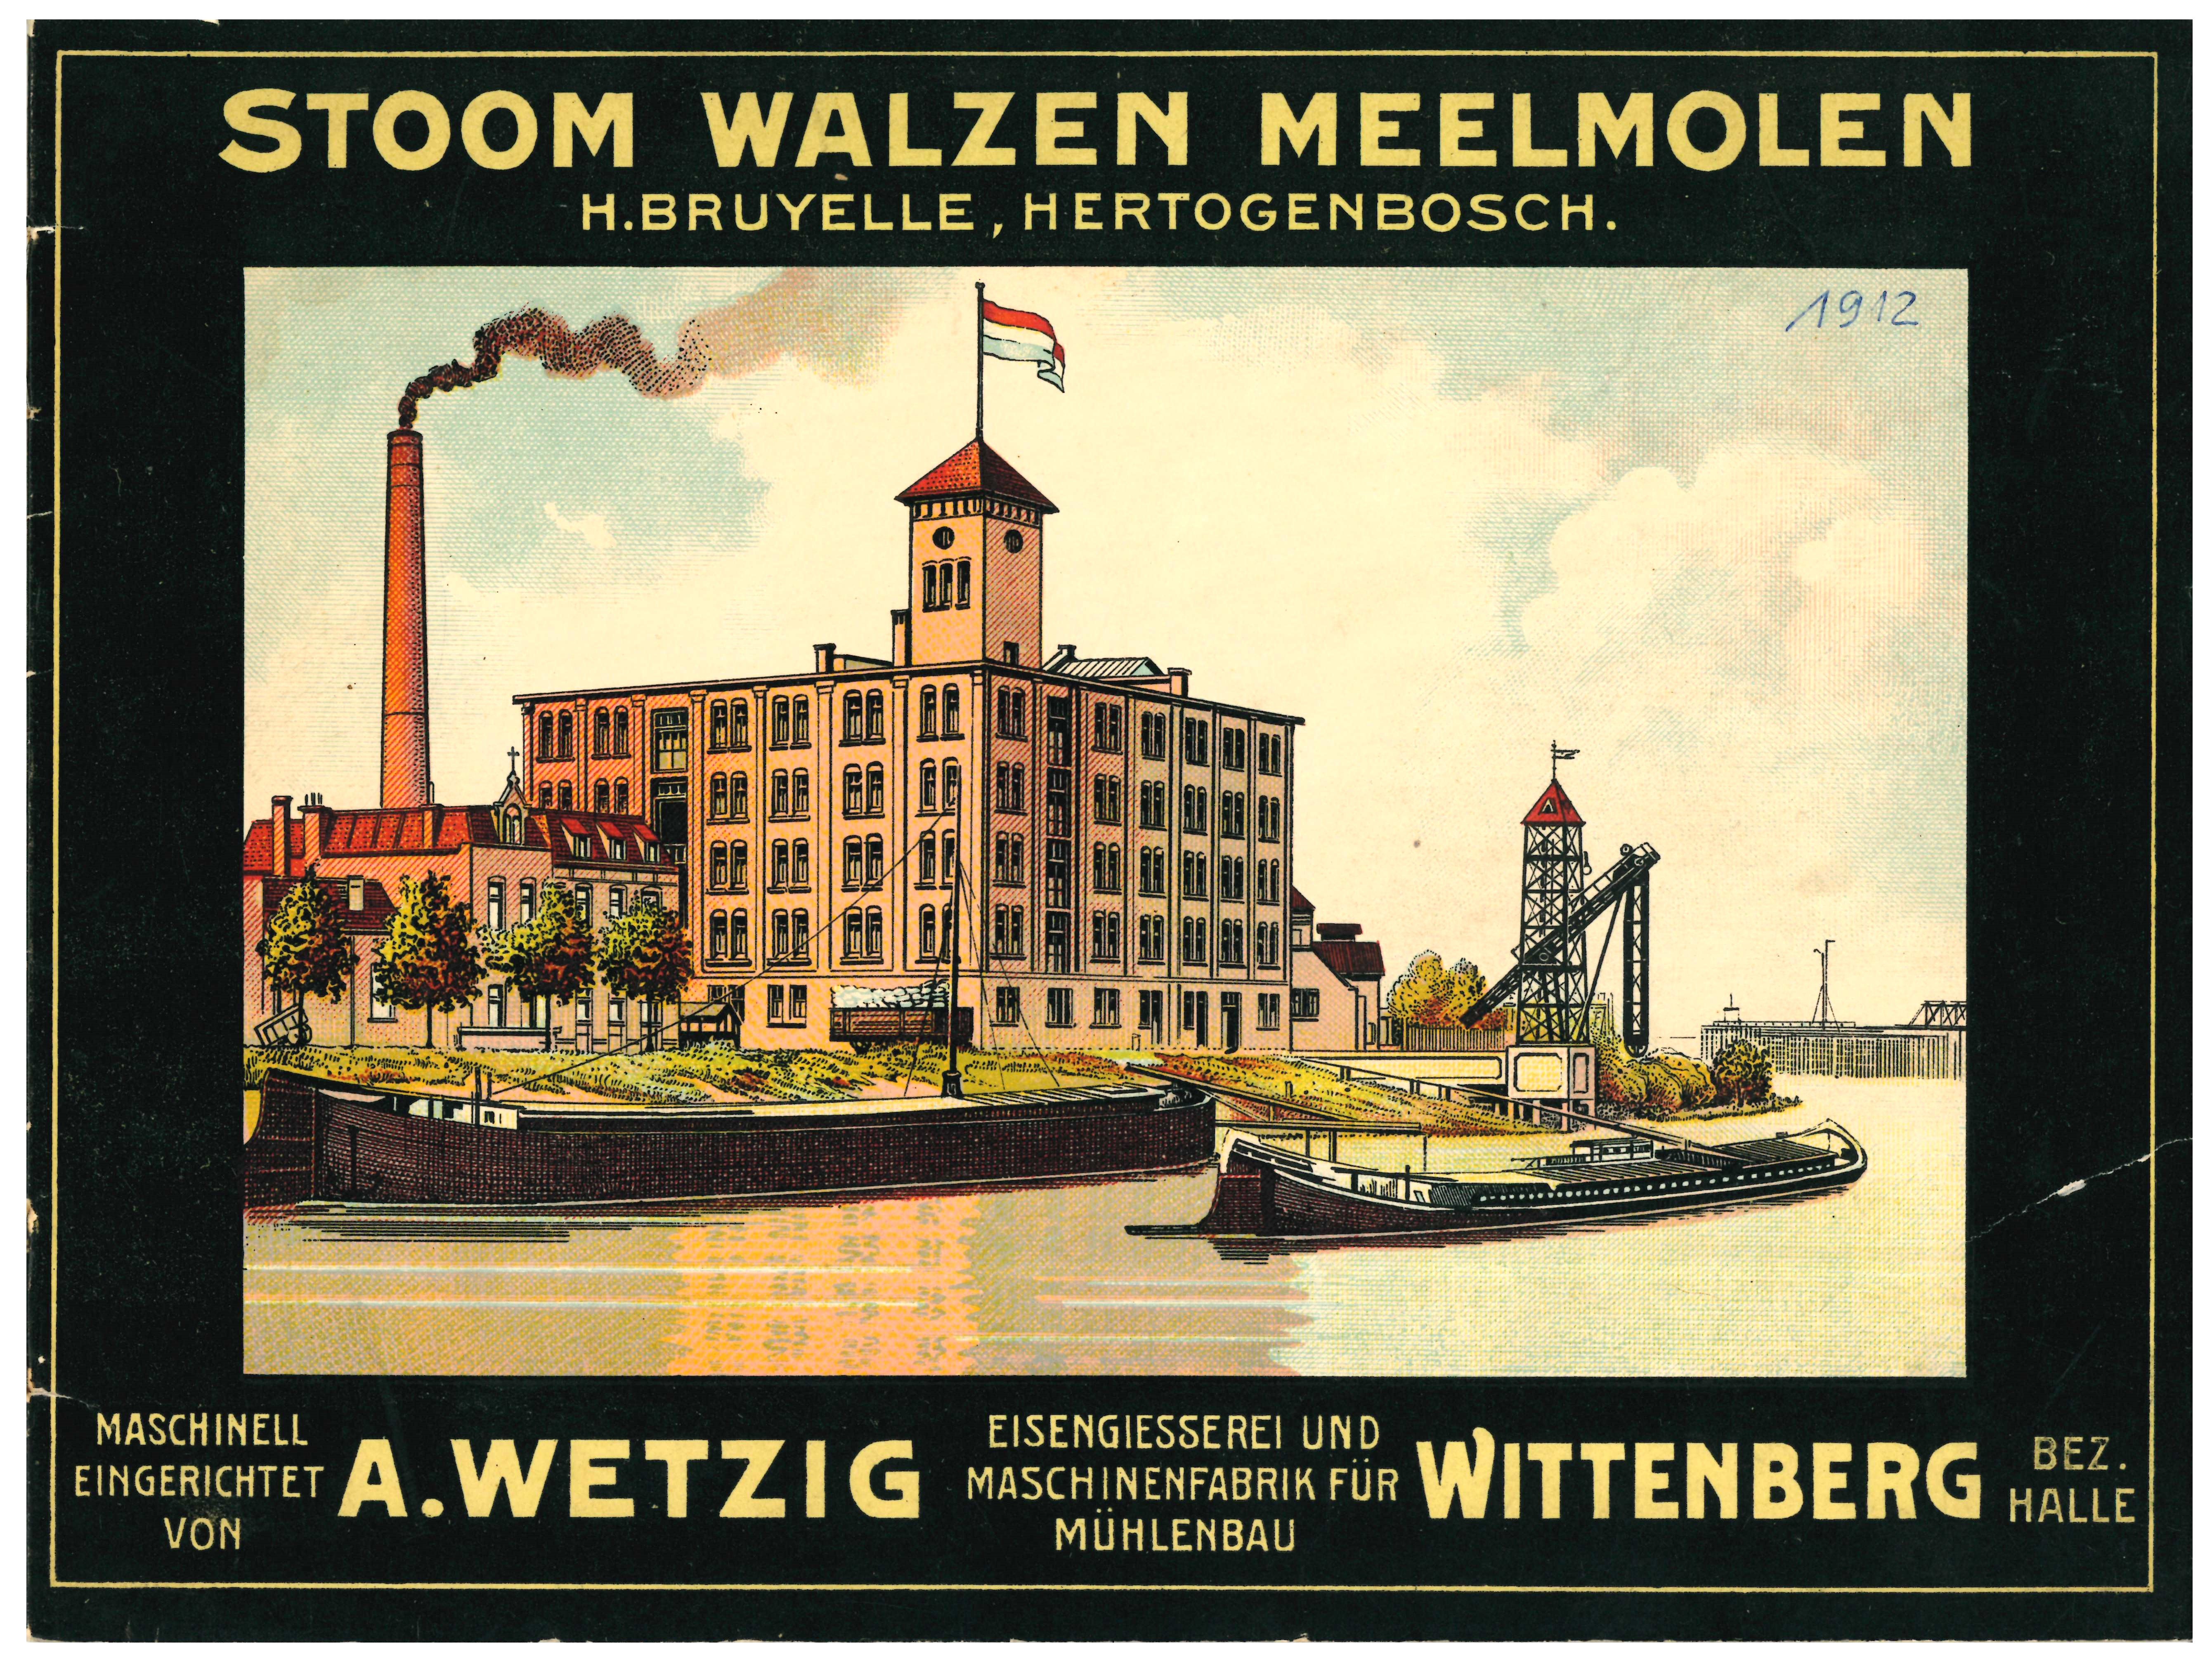 Stoom Walzen Meelmolen, H. Bruyelle, Hertogenbosch (Historische Mühle von Sanssouci CC BY-NC-SA)